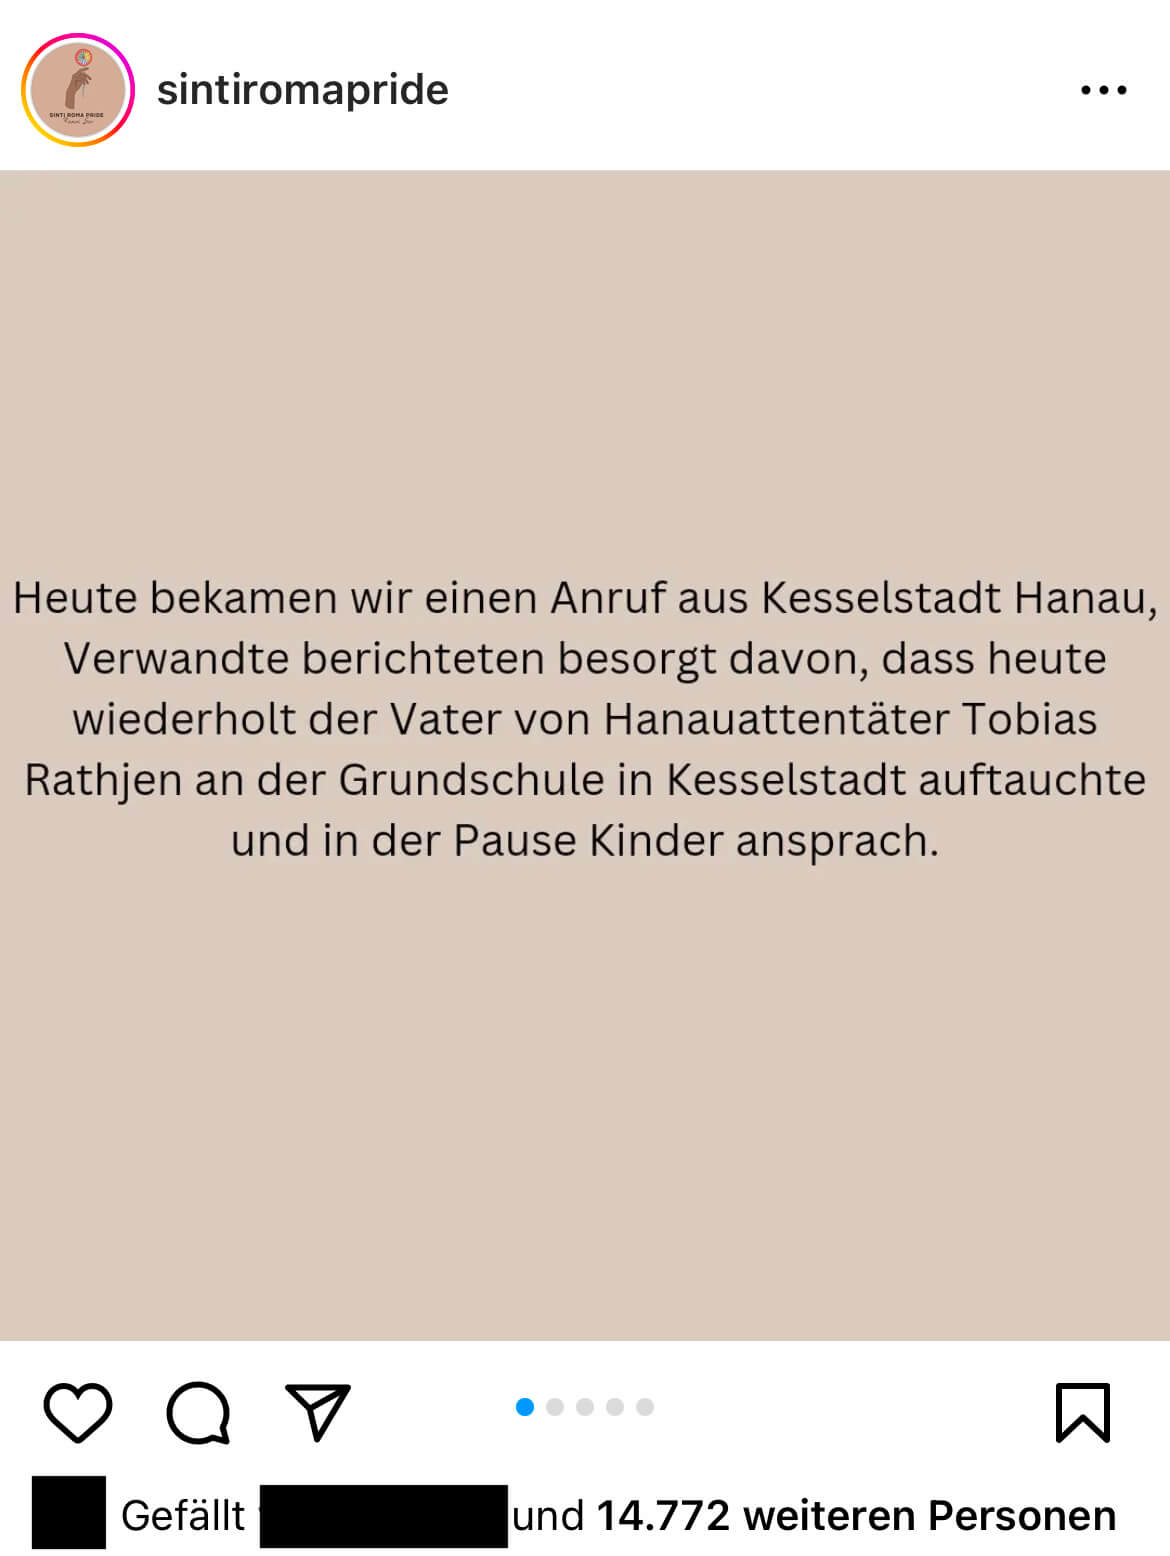 In diesem Instagram-Beitrag vom 23. November wird das Verhalten des Vater des Hanau-Attentäters größtenteils richtig skizziert